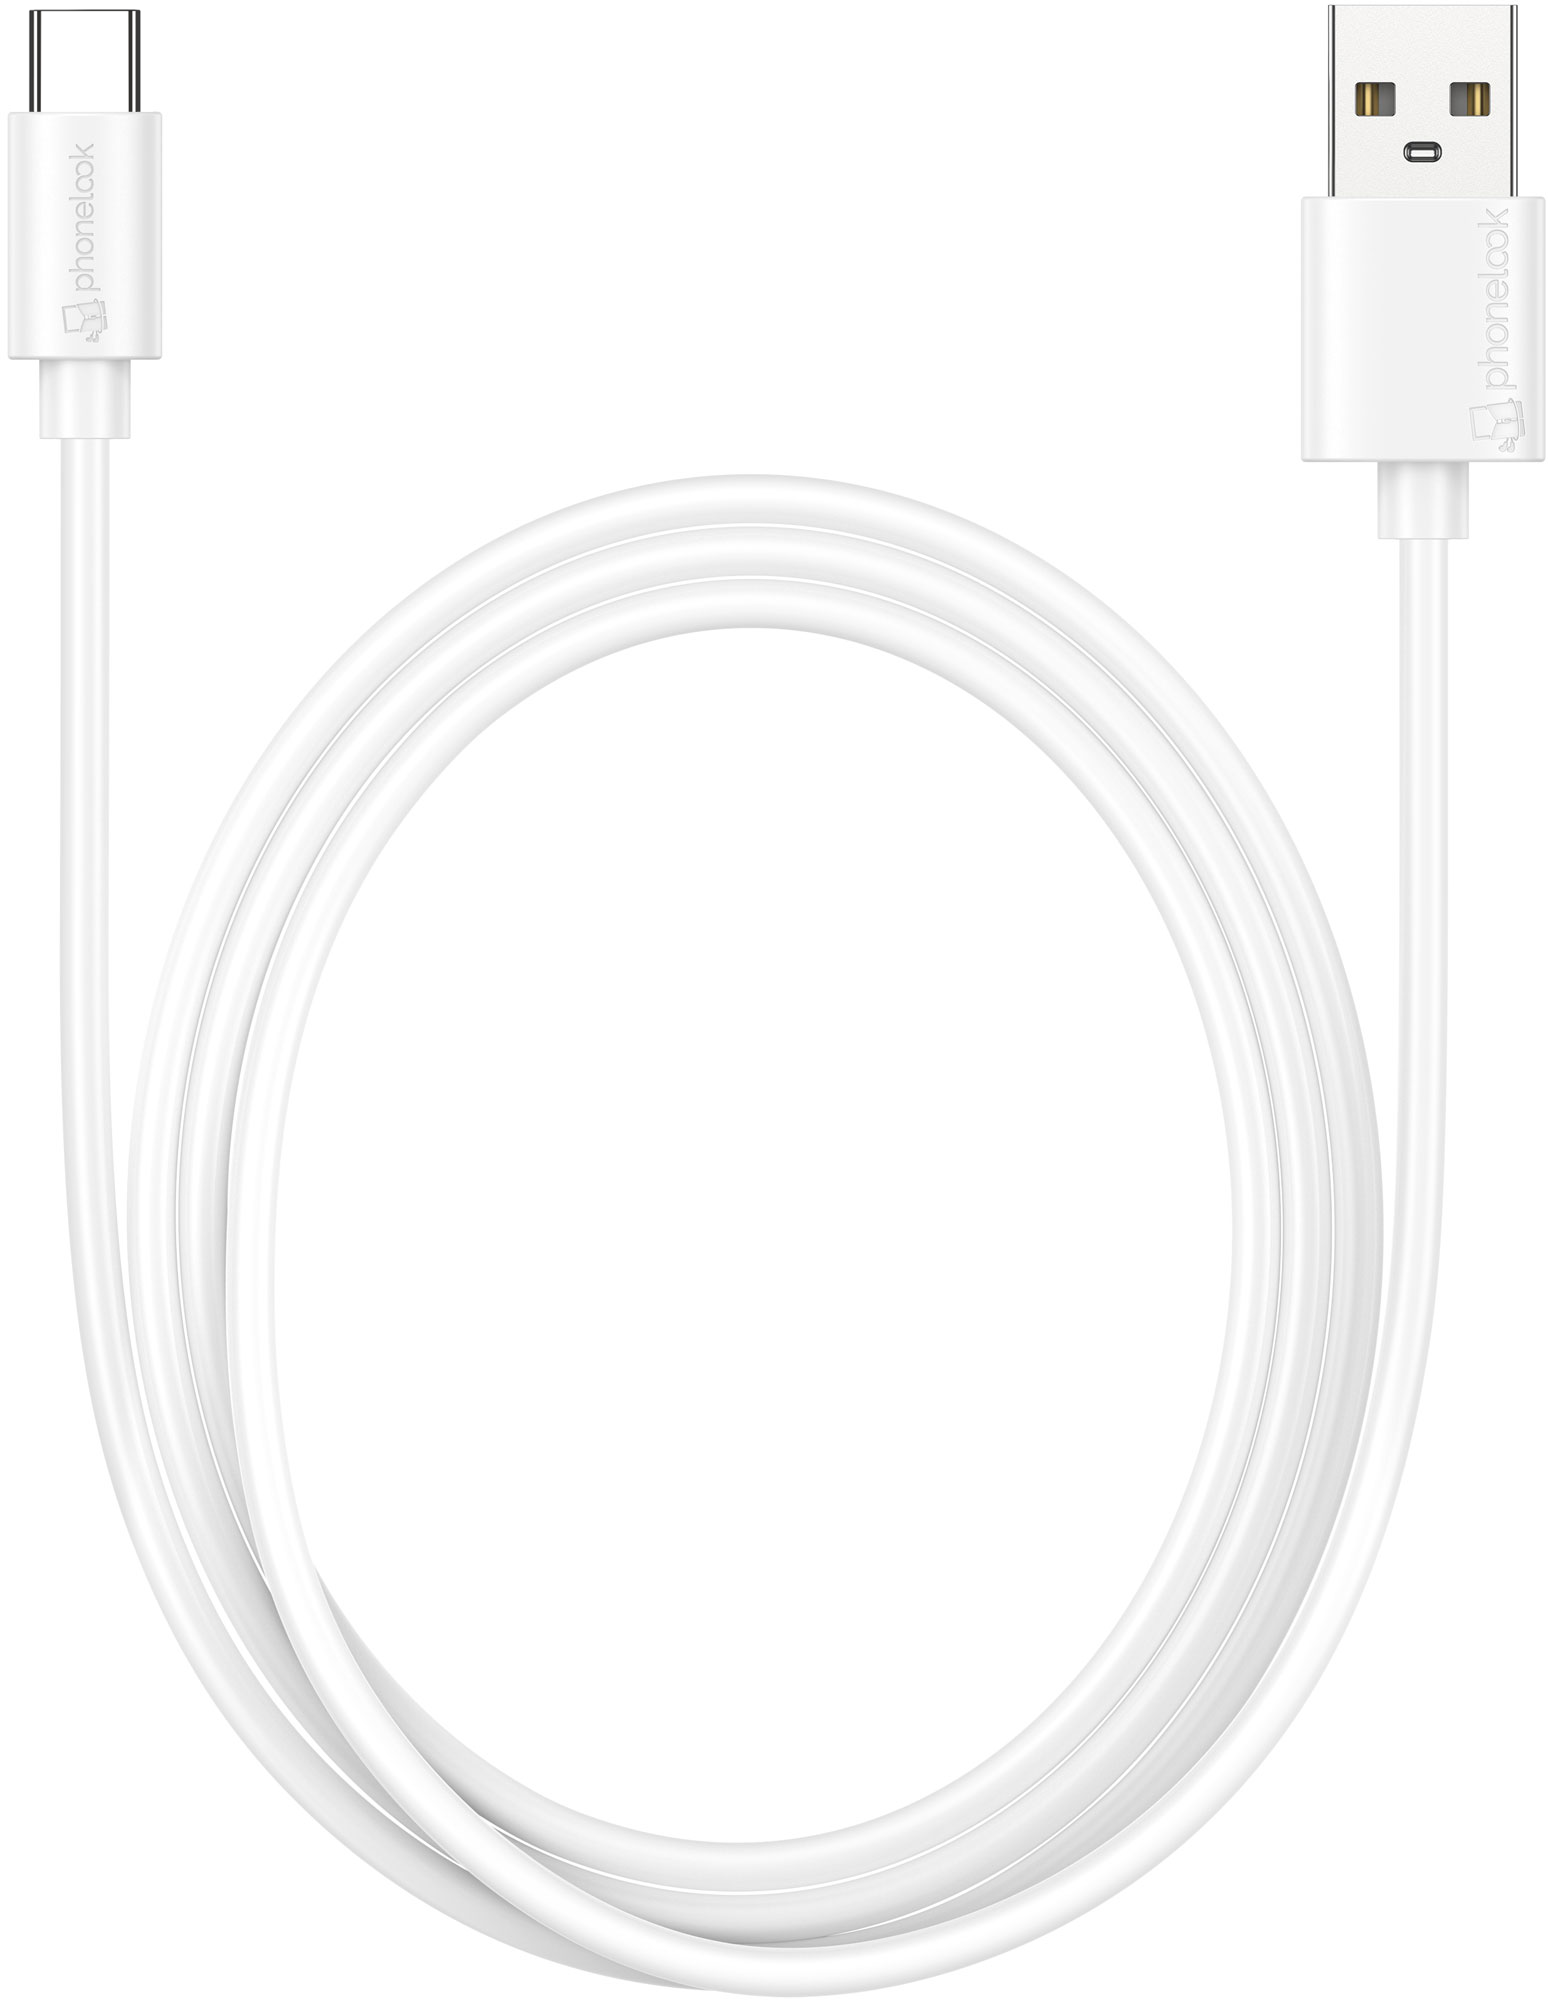 Cable USB-C + Chargeur Secteur Blanc pour Samsung Galaxy S9+ S9 PLUS -  Cable Type USB